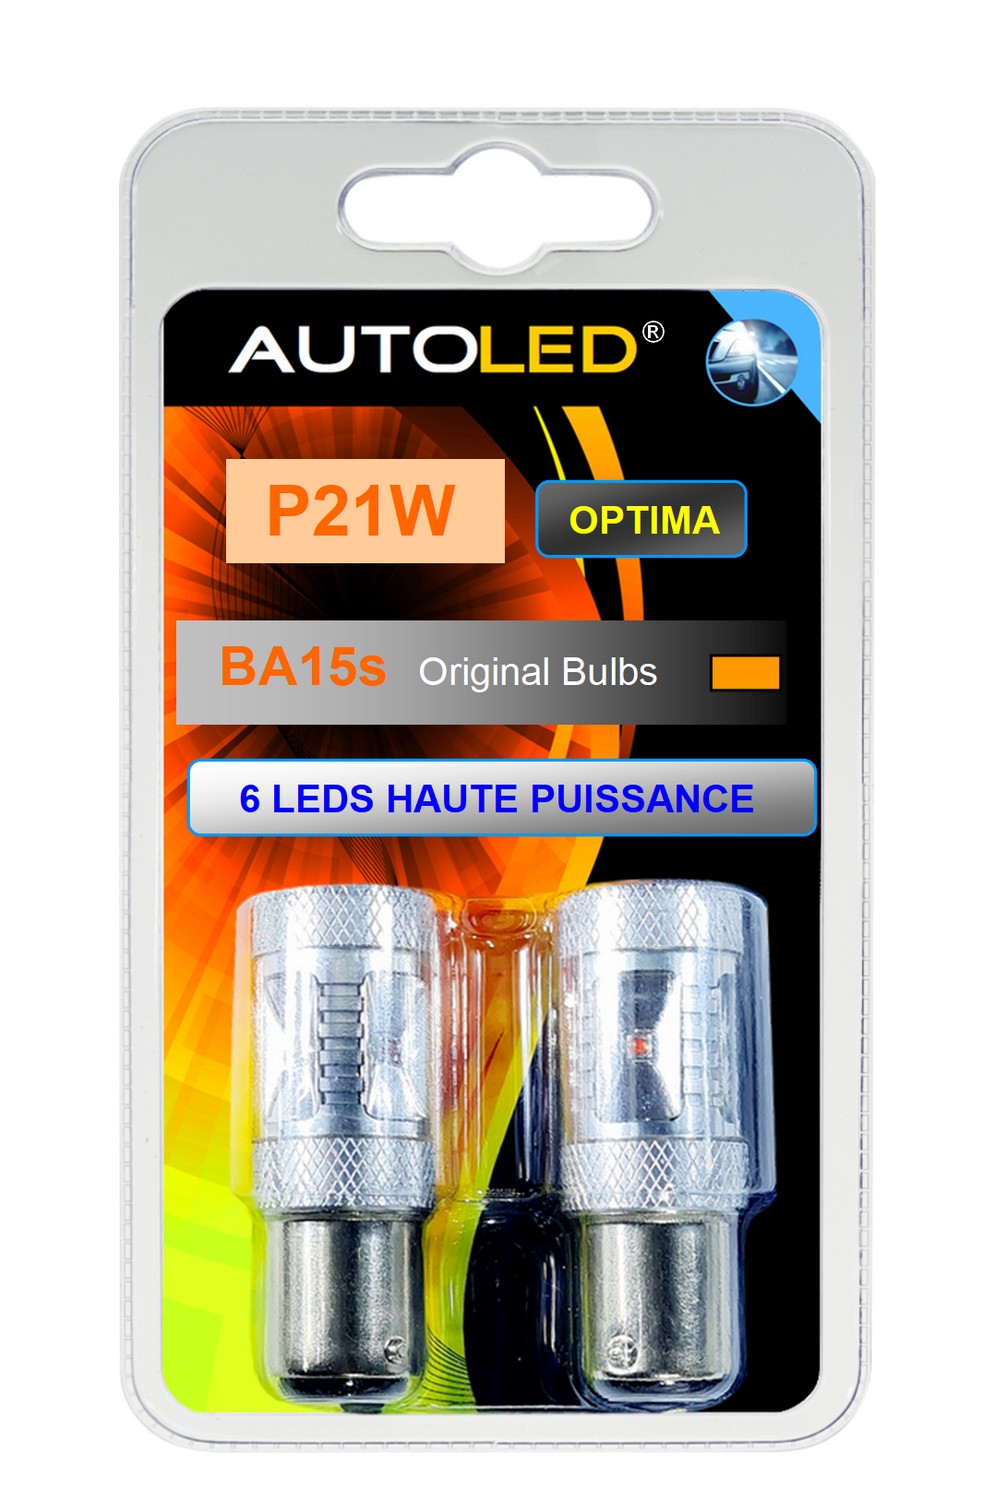 ampoule-leds-autoled-p21w-ba15s-6-leds-haute-puissance-orange-utilisation-feux-clignotants-ref-0227.2